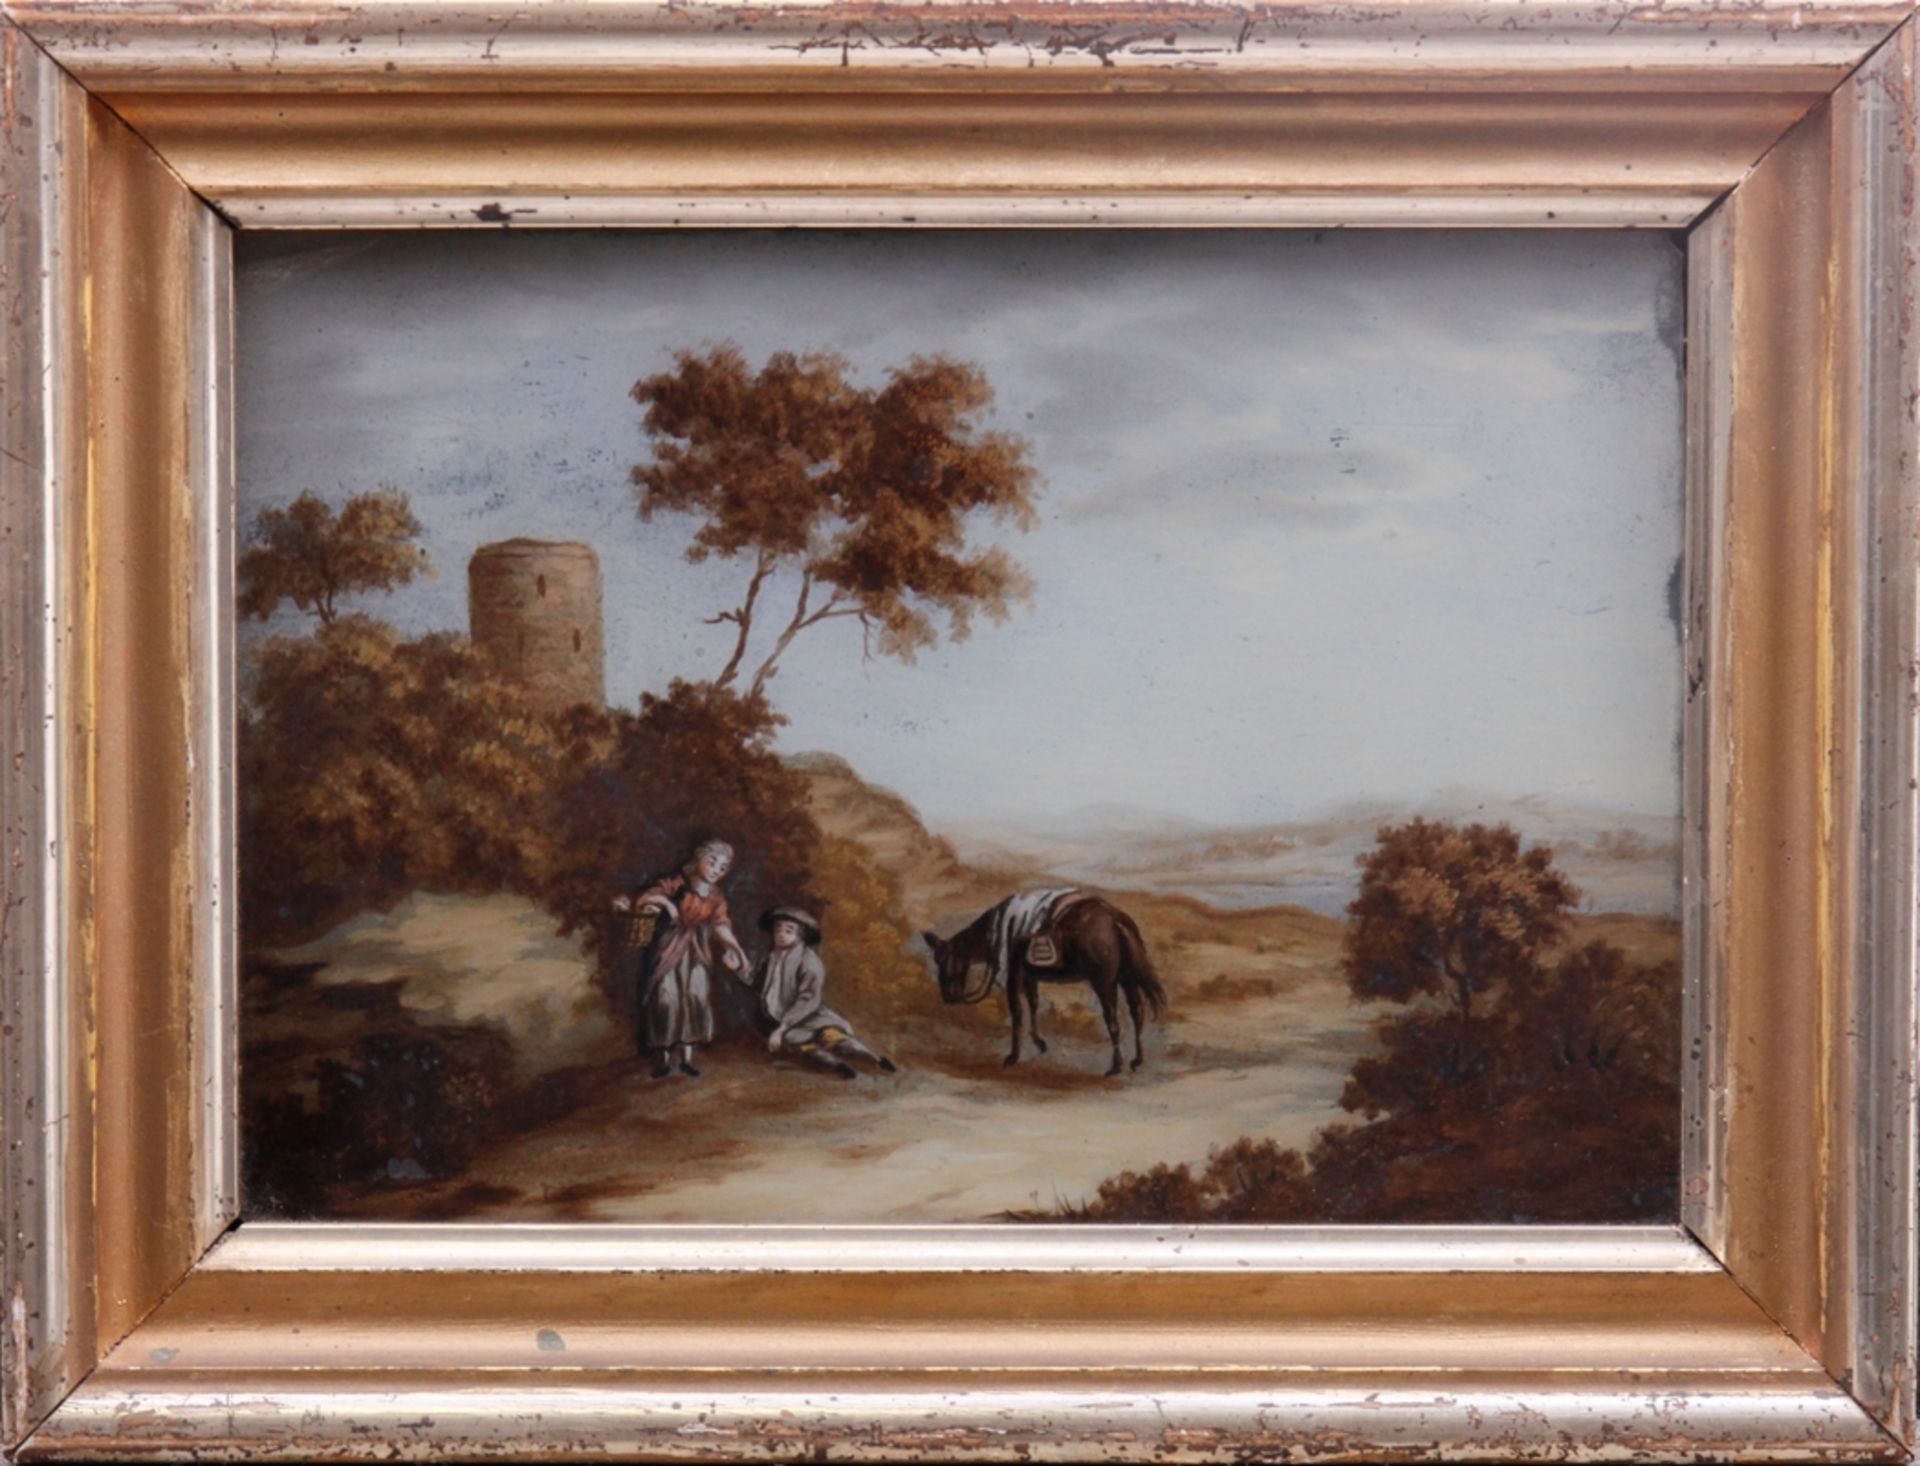 Hinterglasmalerei, pittoreske Landschaft mit Figurenstaffage, 19. Jhdt., ca. 15x21cm, gerahmt (ca.